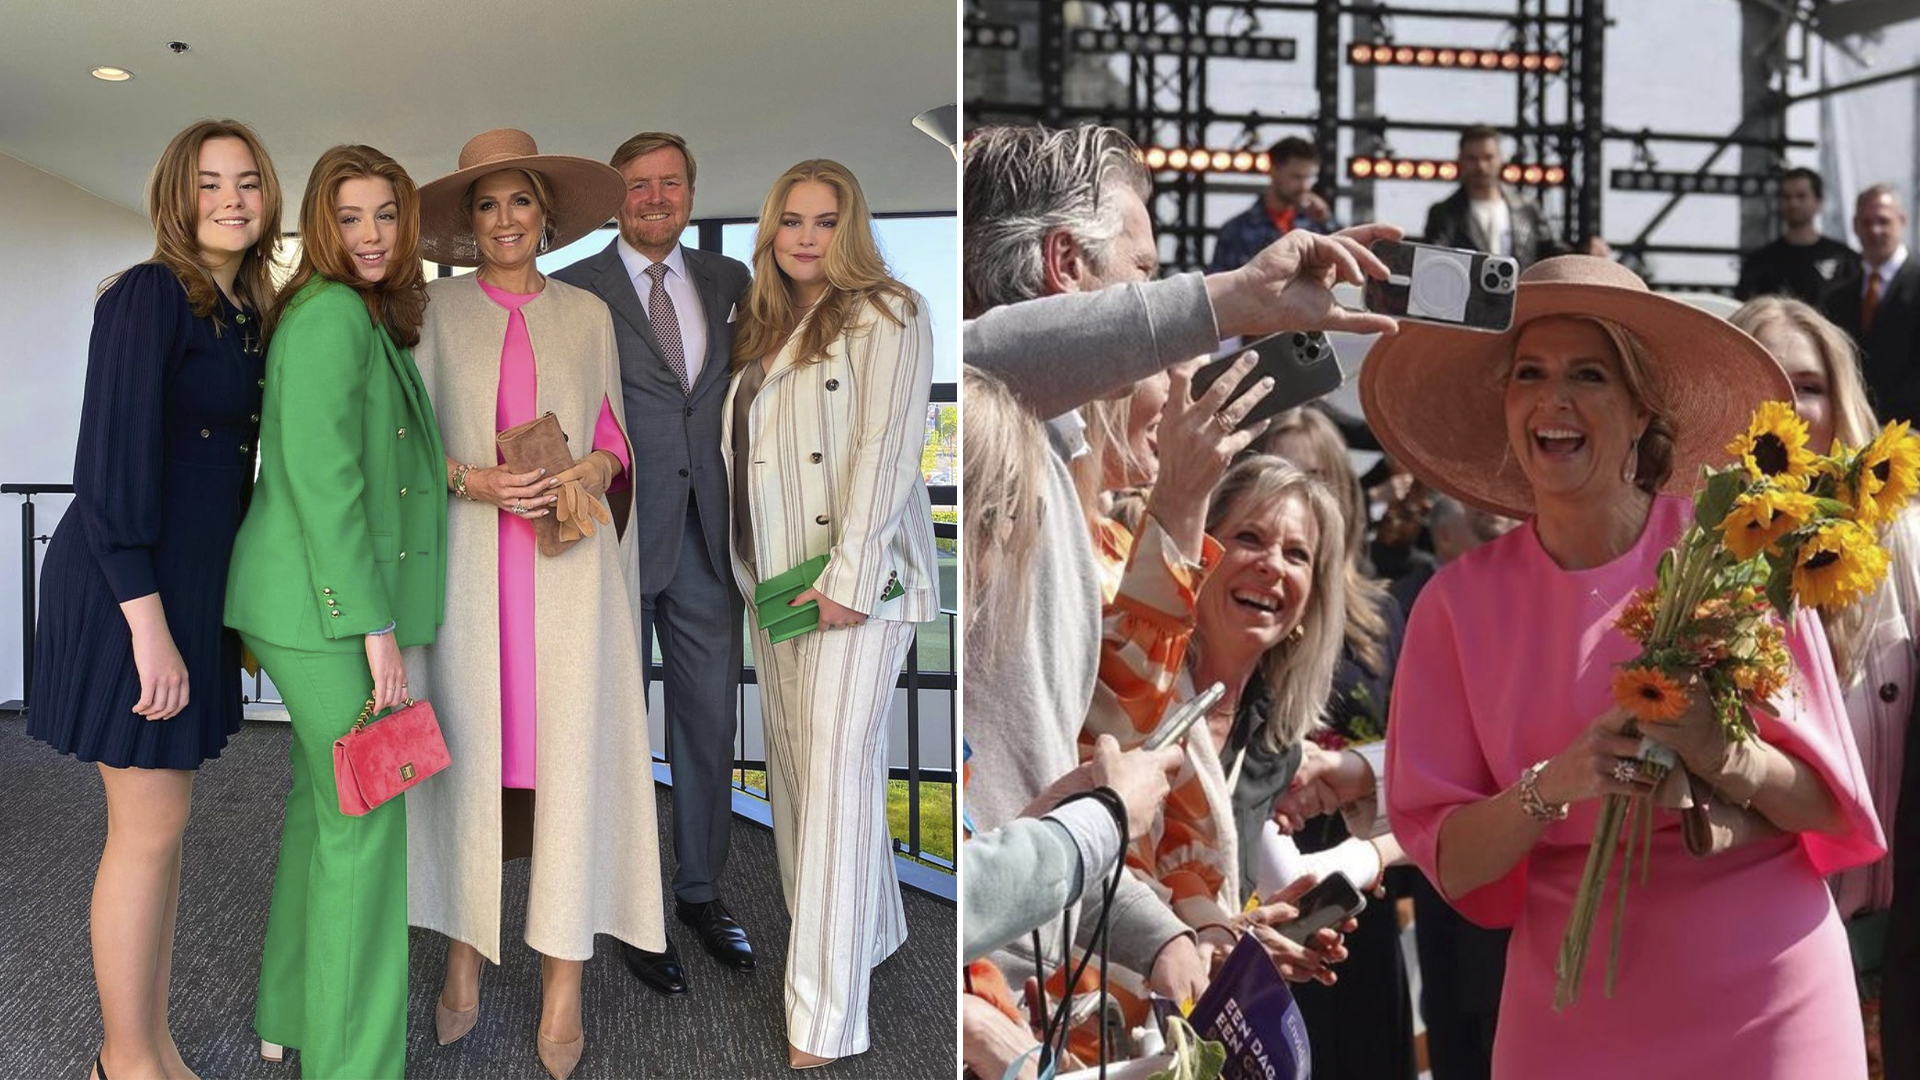 Este miércoles los holandeses coparon las calles de Maastricht en motivo de celebración por el Día del Rey de la mano de la familia real holandesa, compuesta por Máxima Zorreguieta, el rey Guillermo Alejandro de los Países Bajos y sus hijas, Amalia, Alexia y Ariane de Holanda (Instagram)